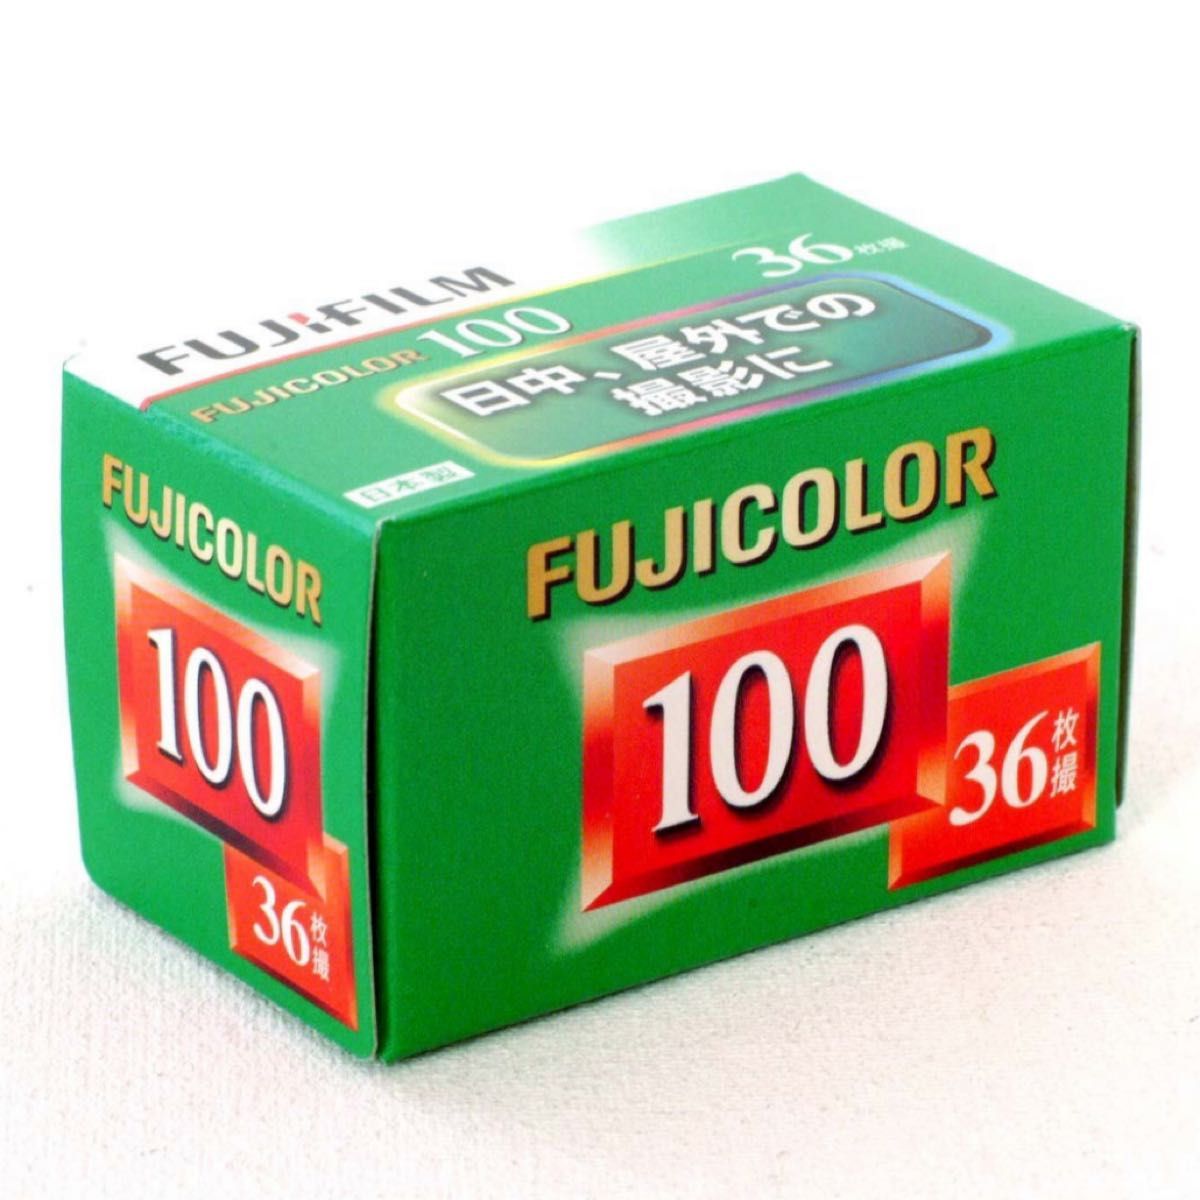 富士フィルム フジカラー FUJICOLOR 100 36枚撮り 20本セット カメラ